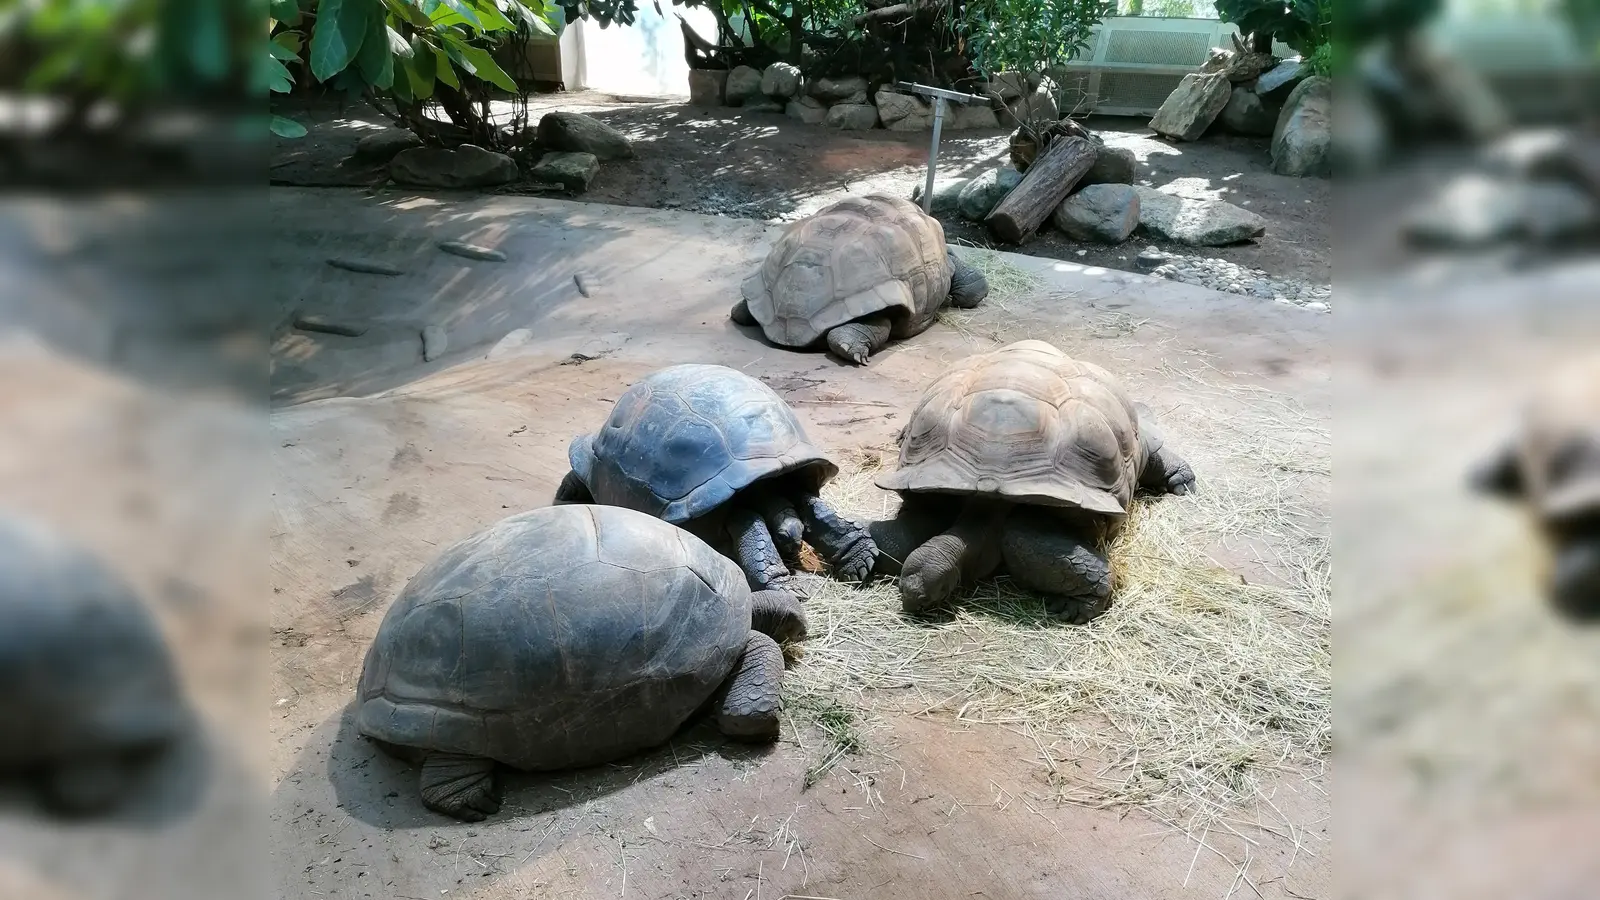 Schildkröten (Foto: chö)